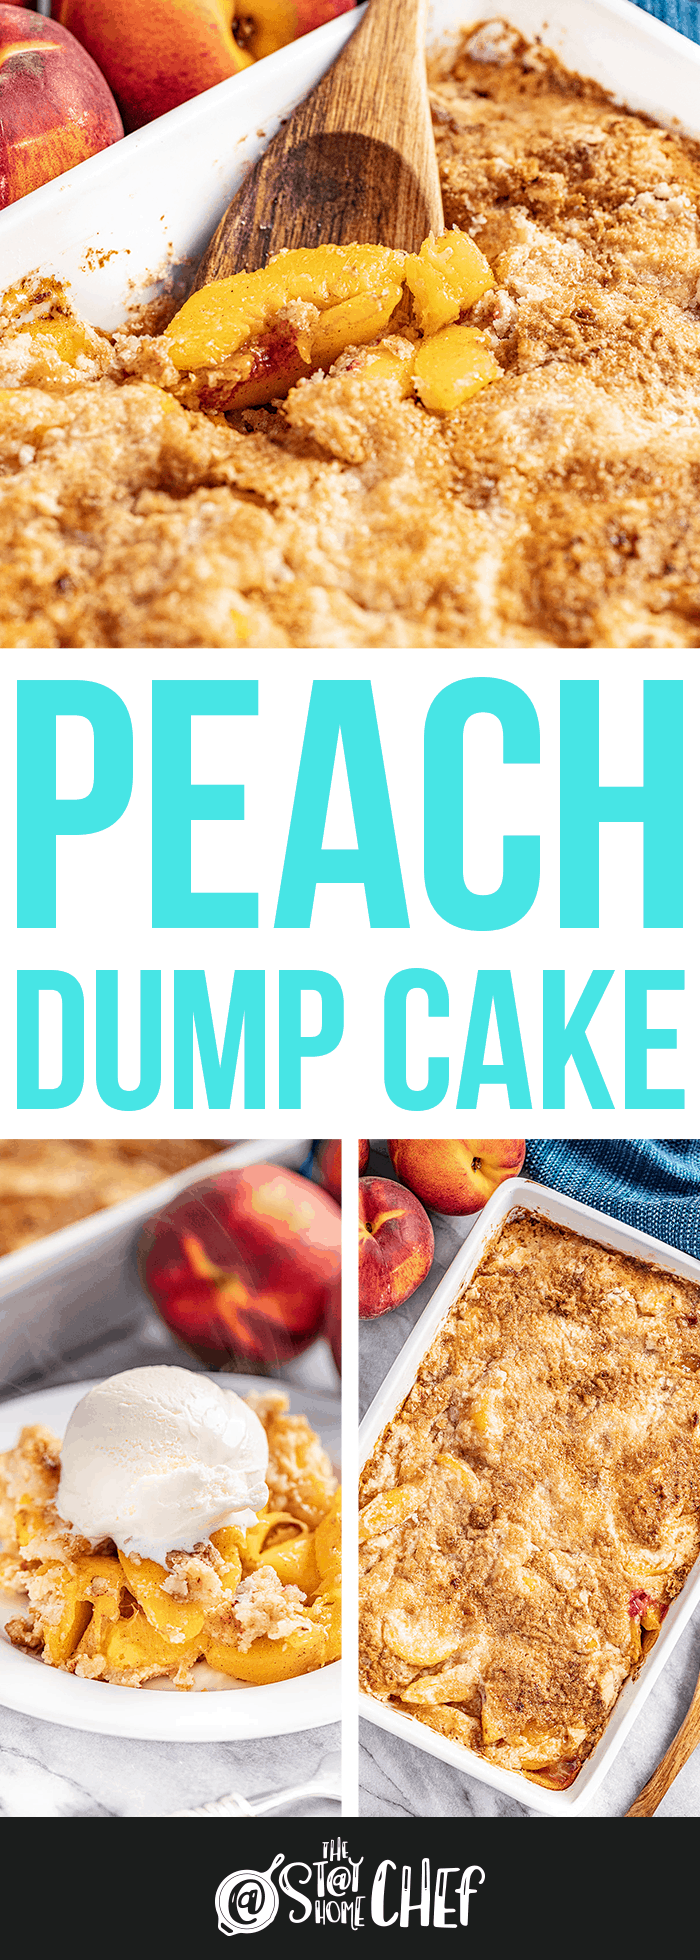 Peach Dump Cake From Scratch